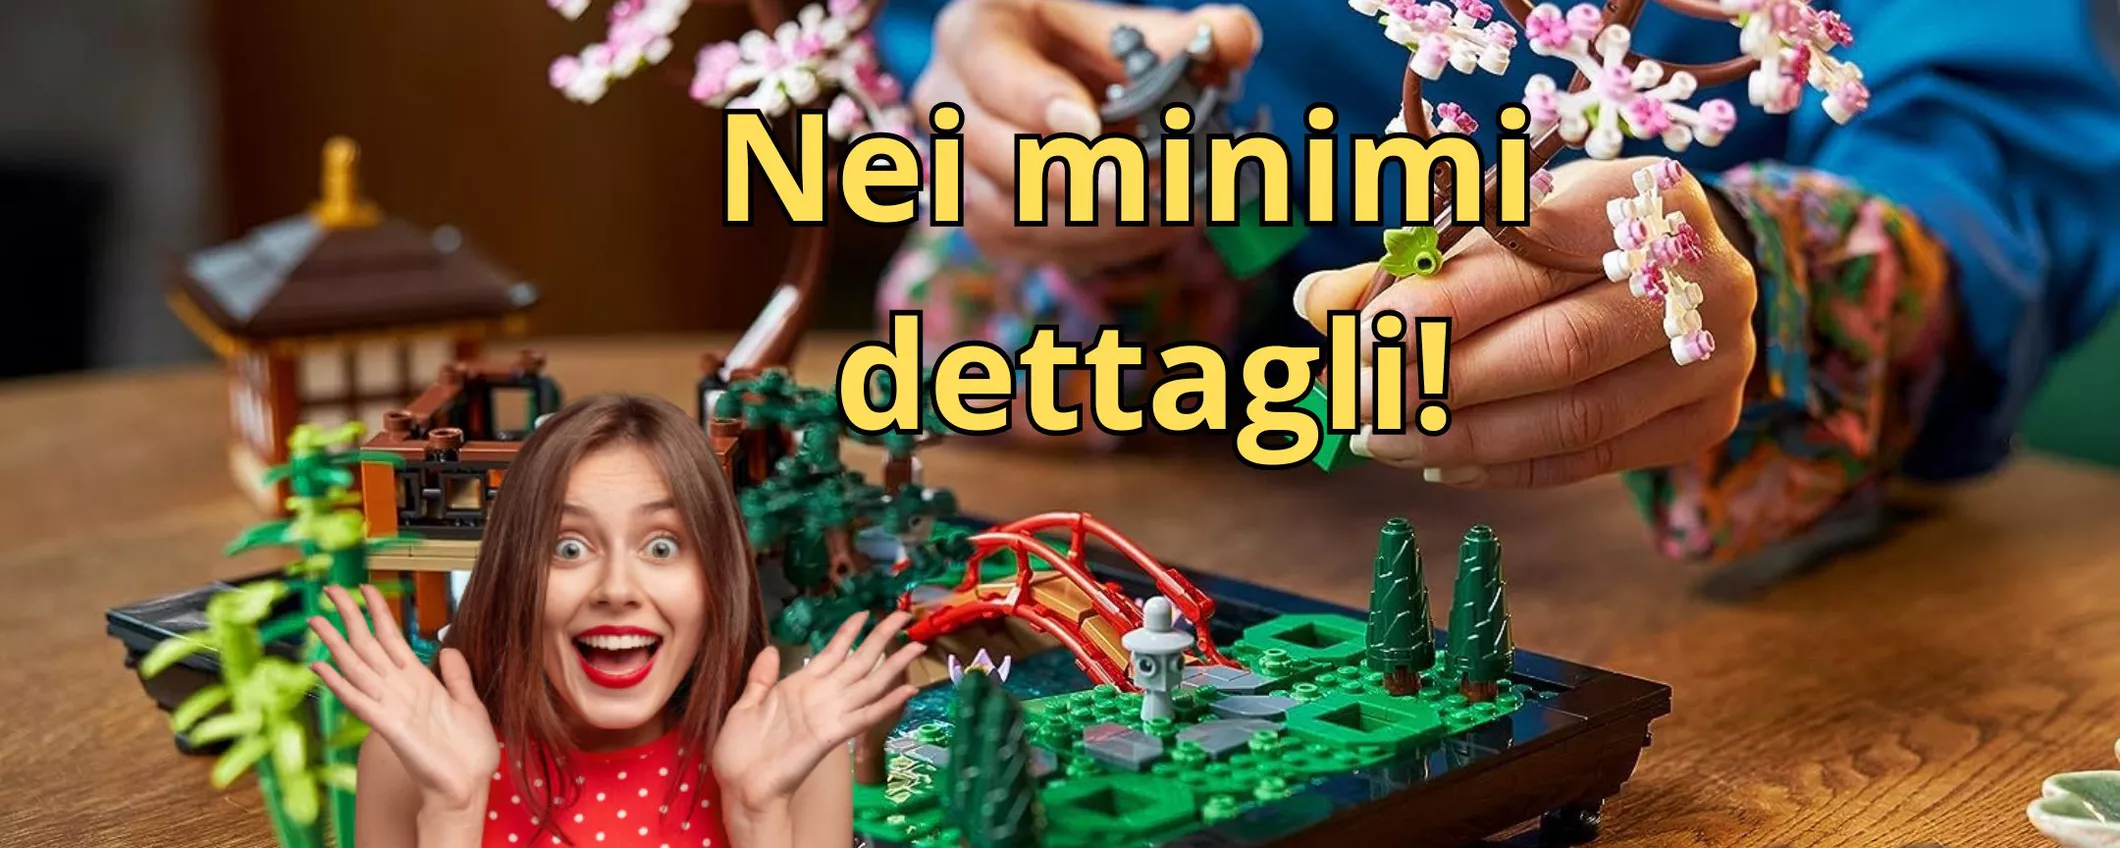 Realizza anche tu un Giardino giapponese in casa, grazie a questo LEGO in OFFERTA!